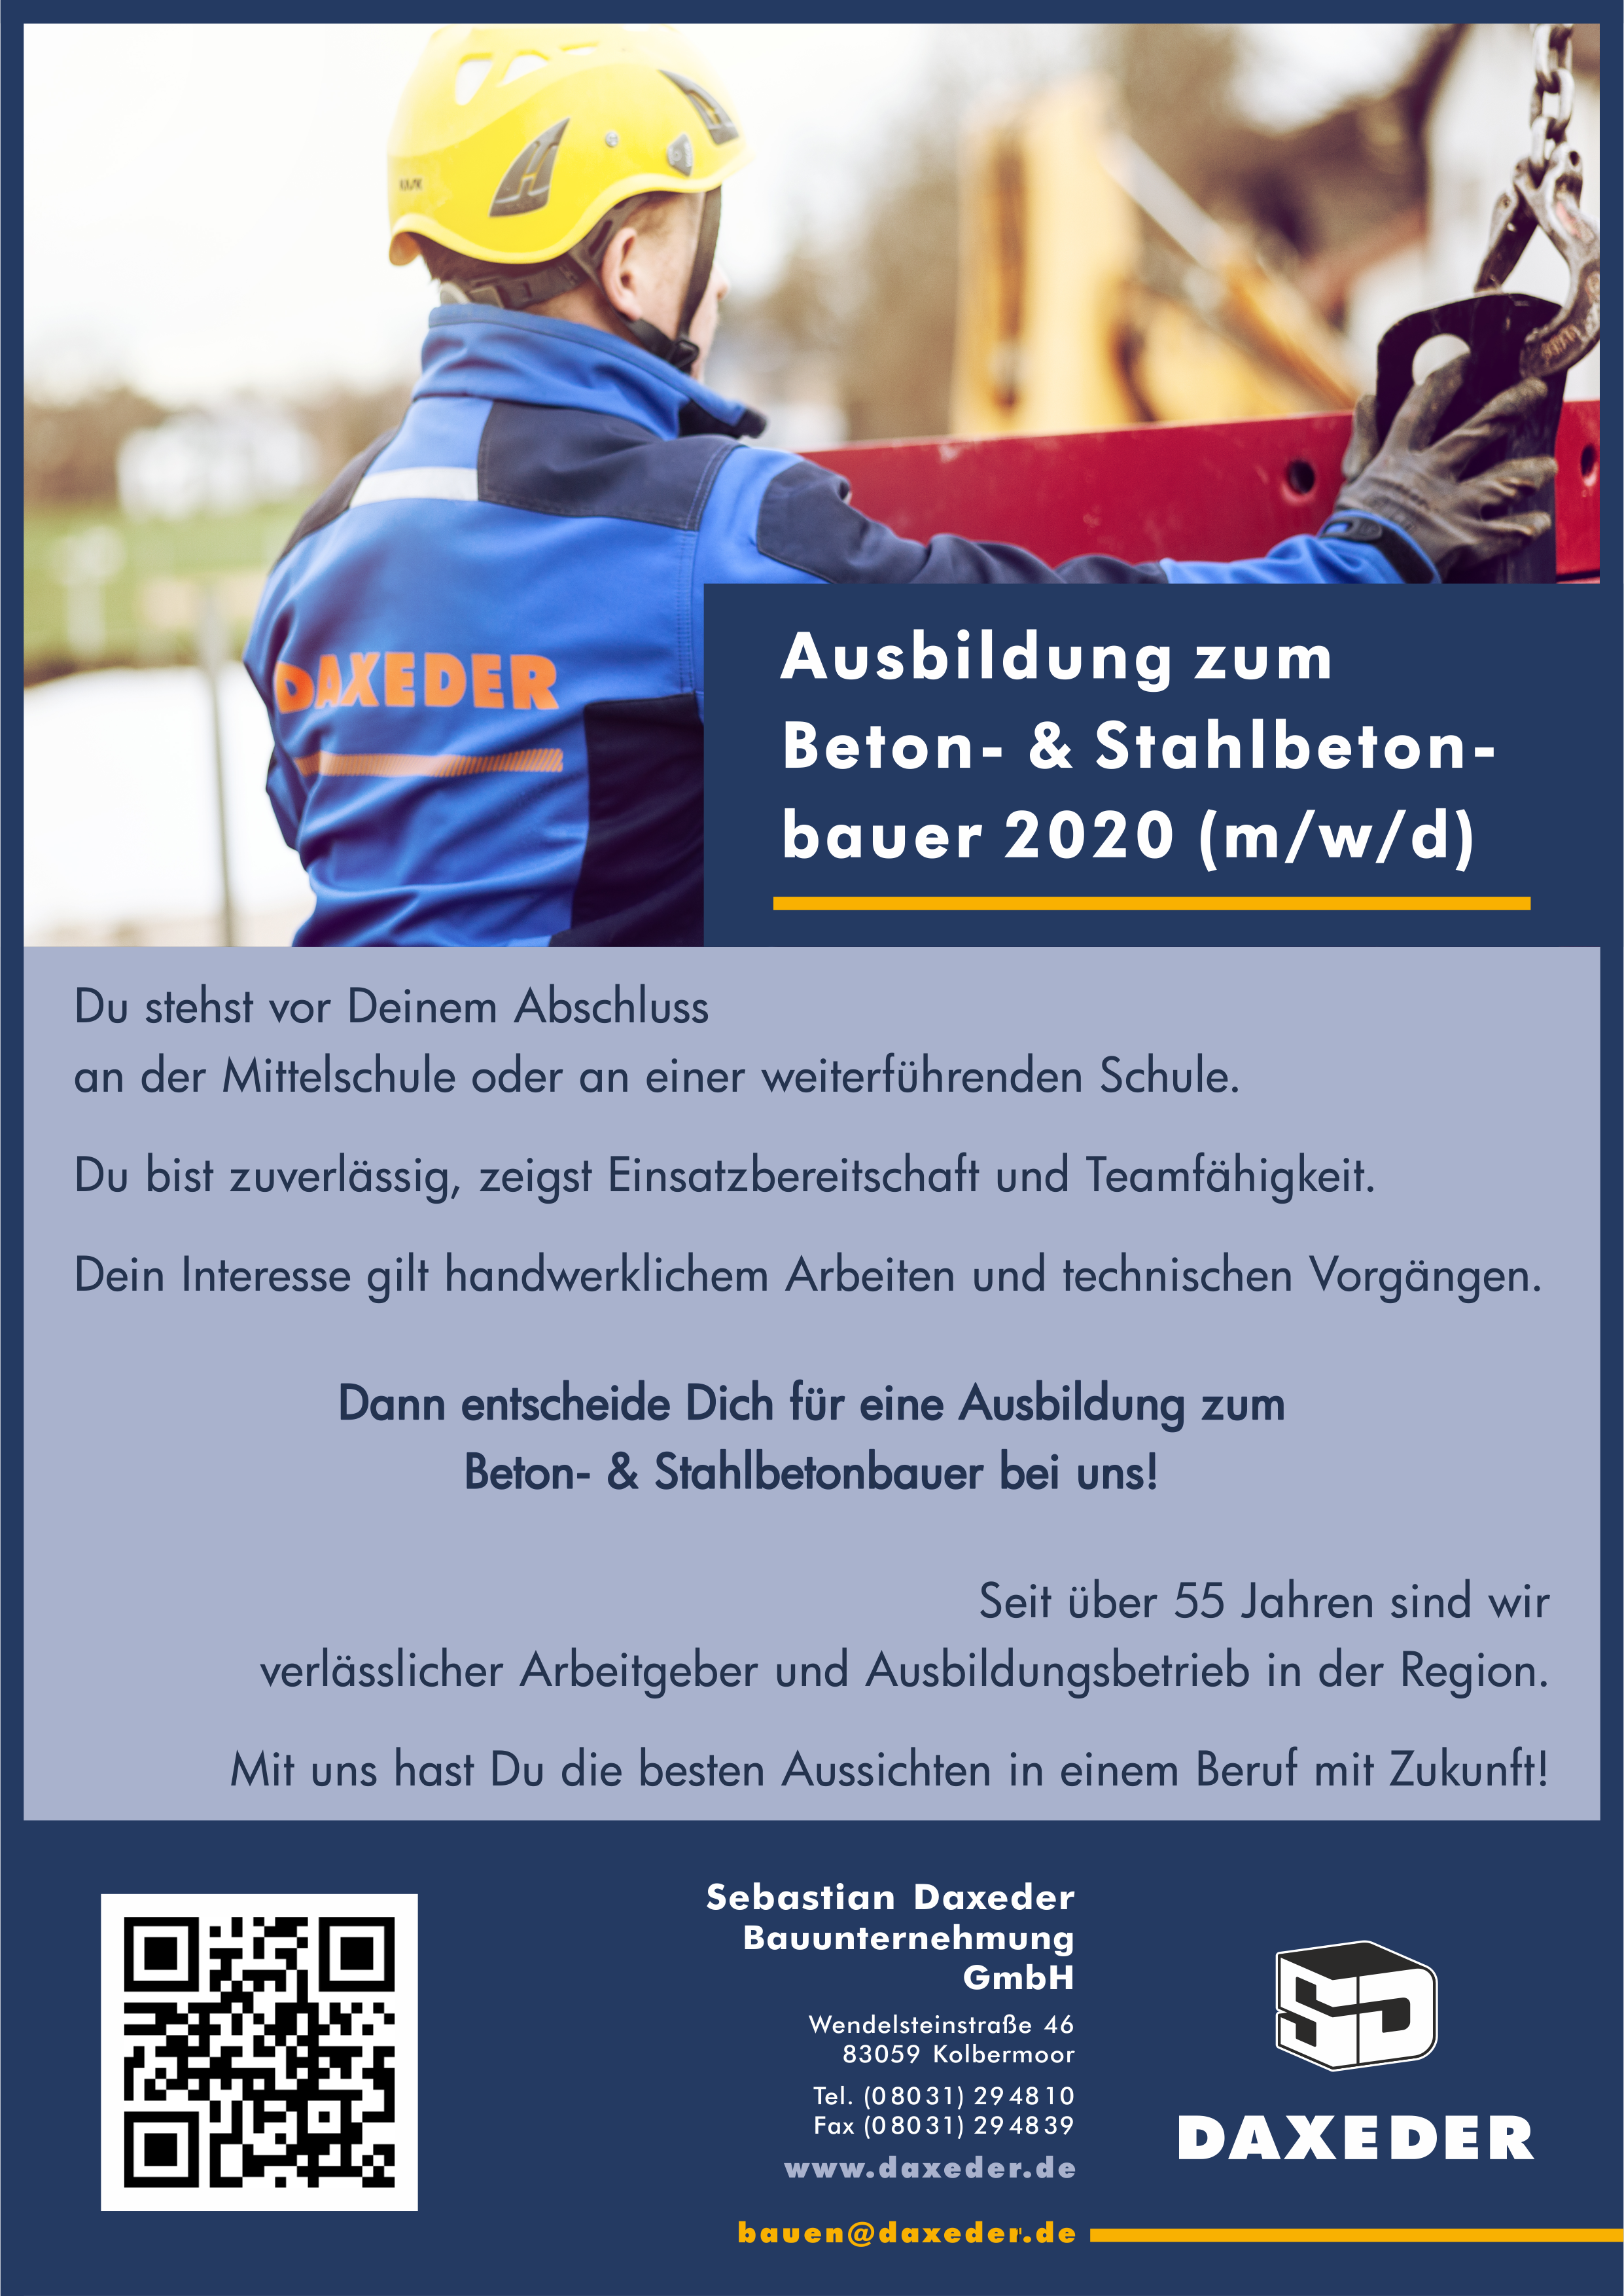 Sebastian Daxeder Bauunternehmung GmbH, Ausbildung Beton- und Stahlbetonbauer 2020